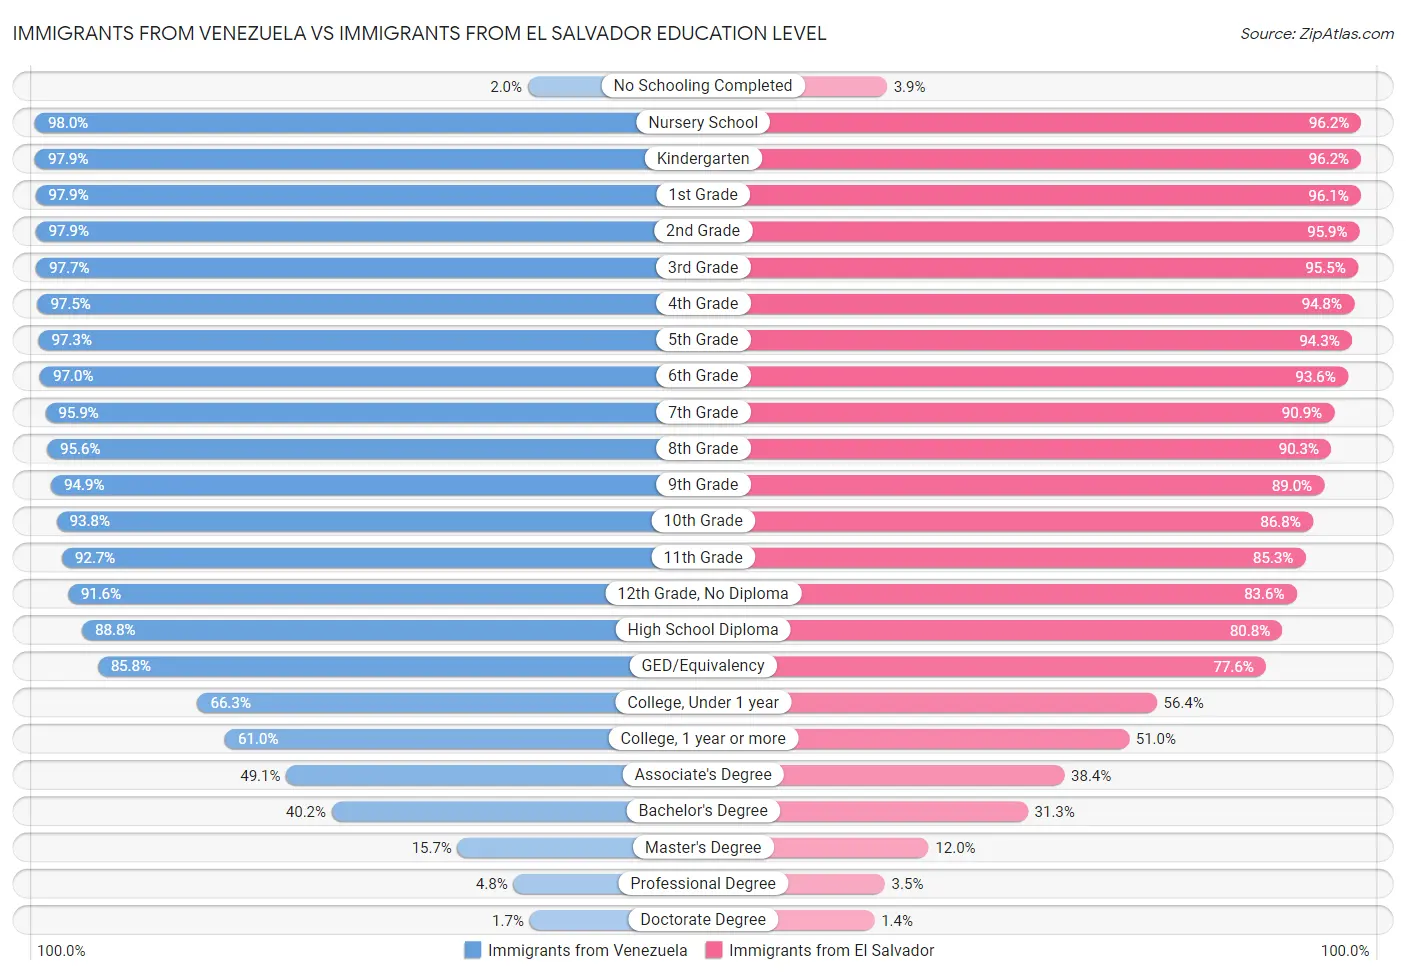 Immigrants from Venezuela vs Immigrants from El Salvador Education Level